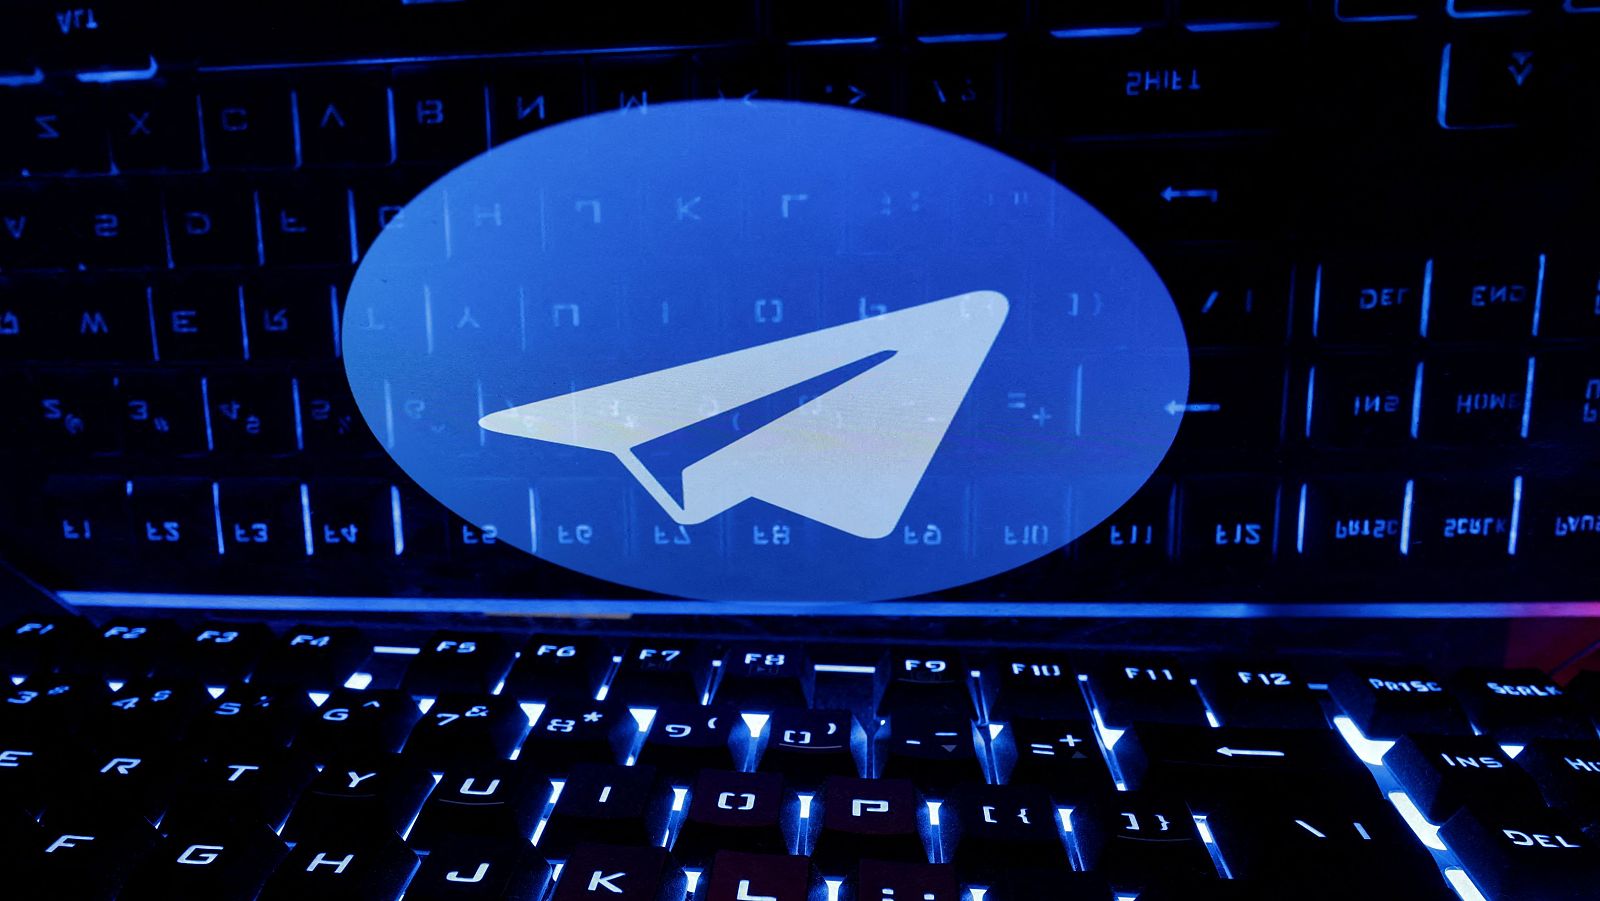 Suspensión de Telegram: podría provocar una situación inestable